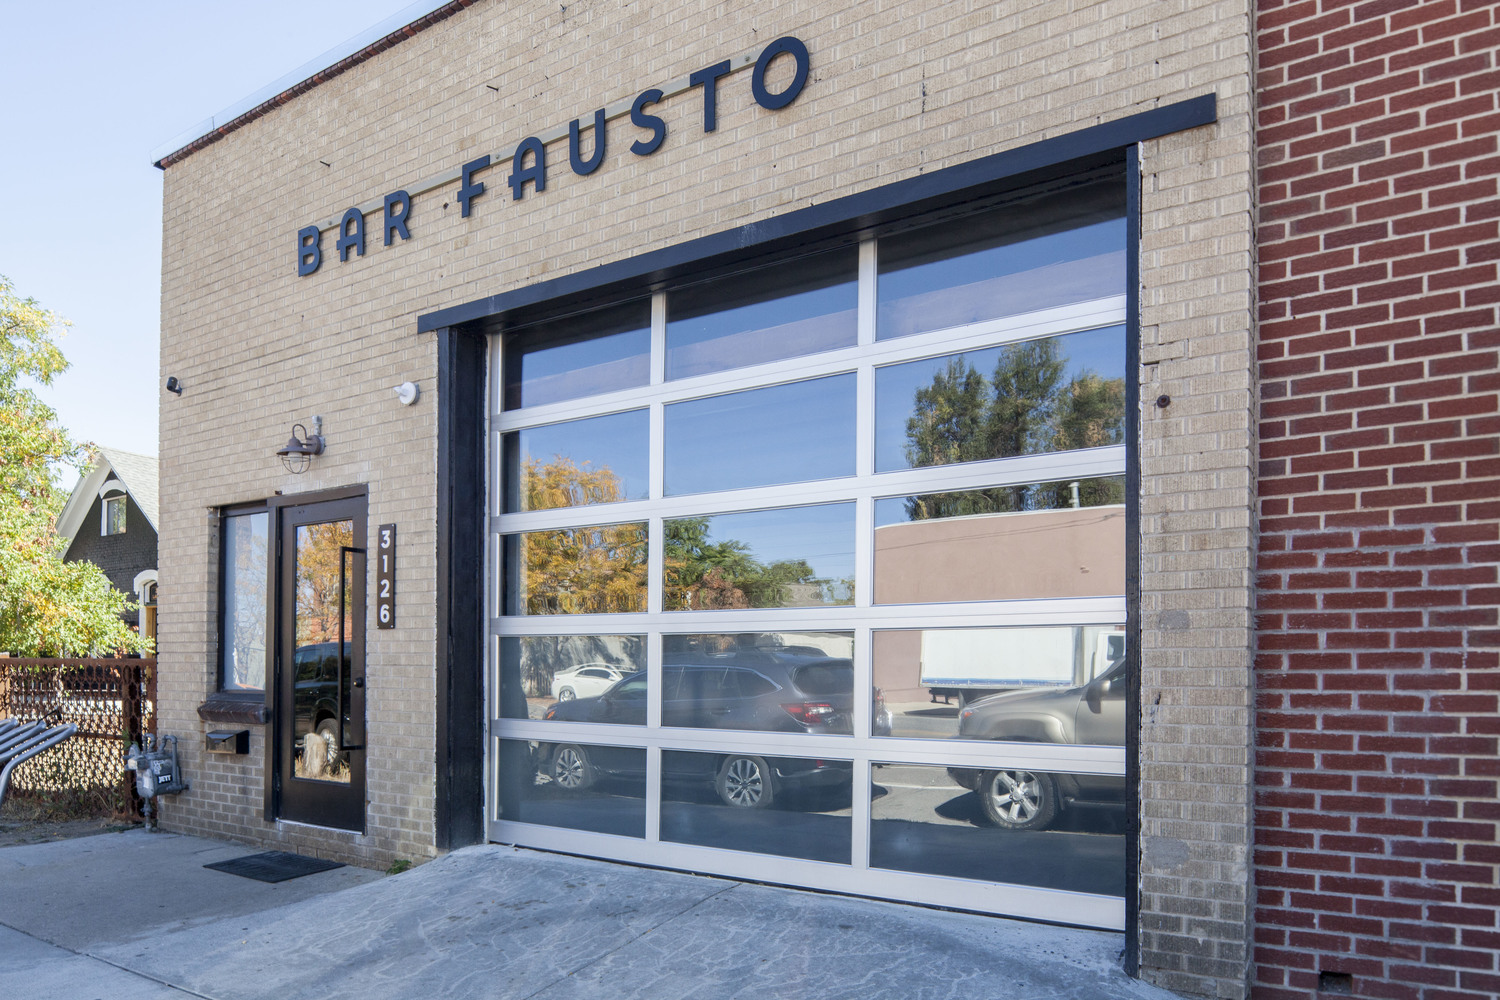 Bar Fausto